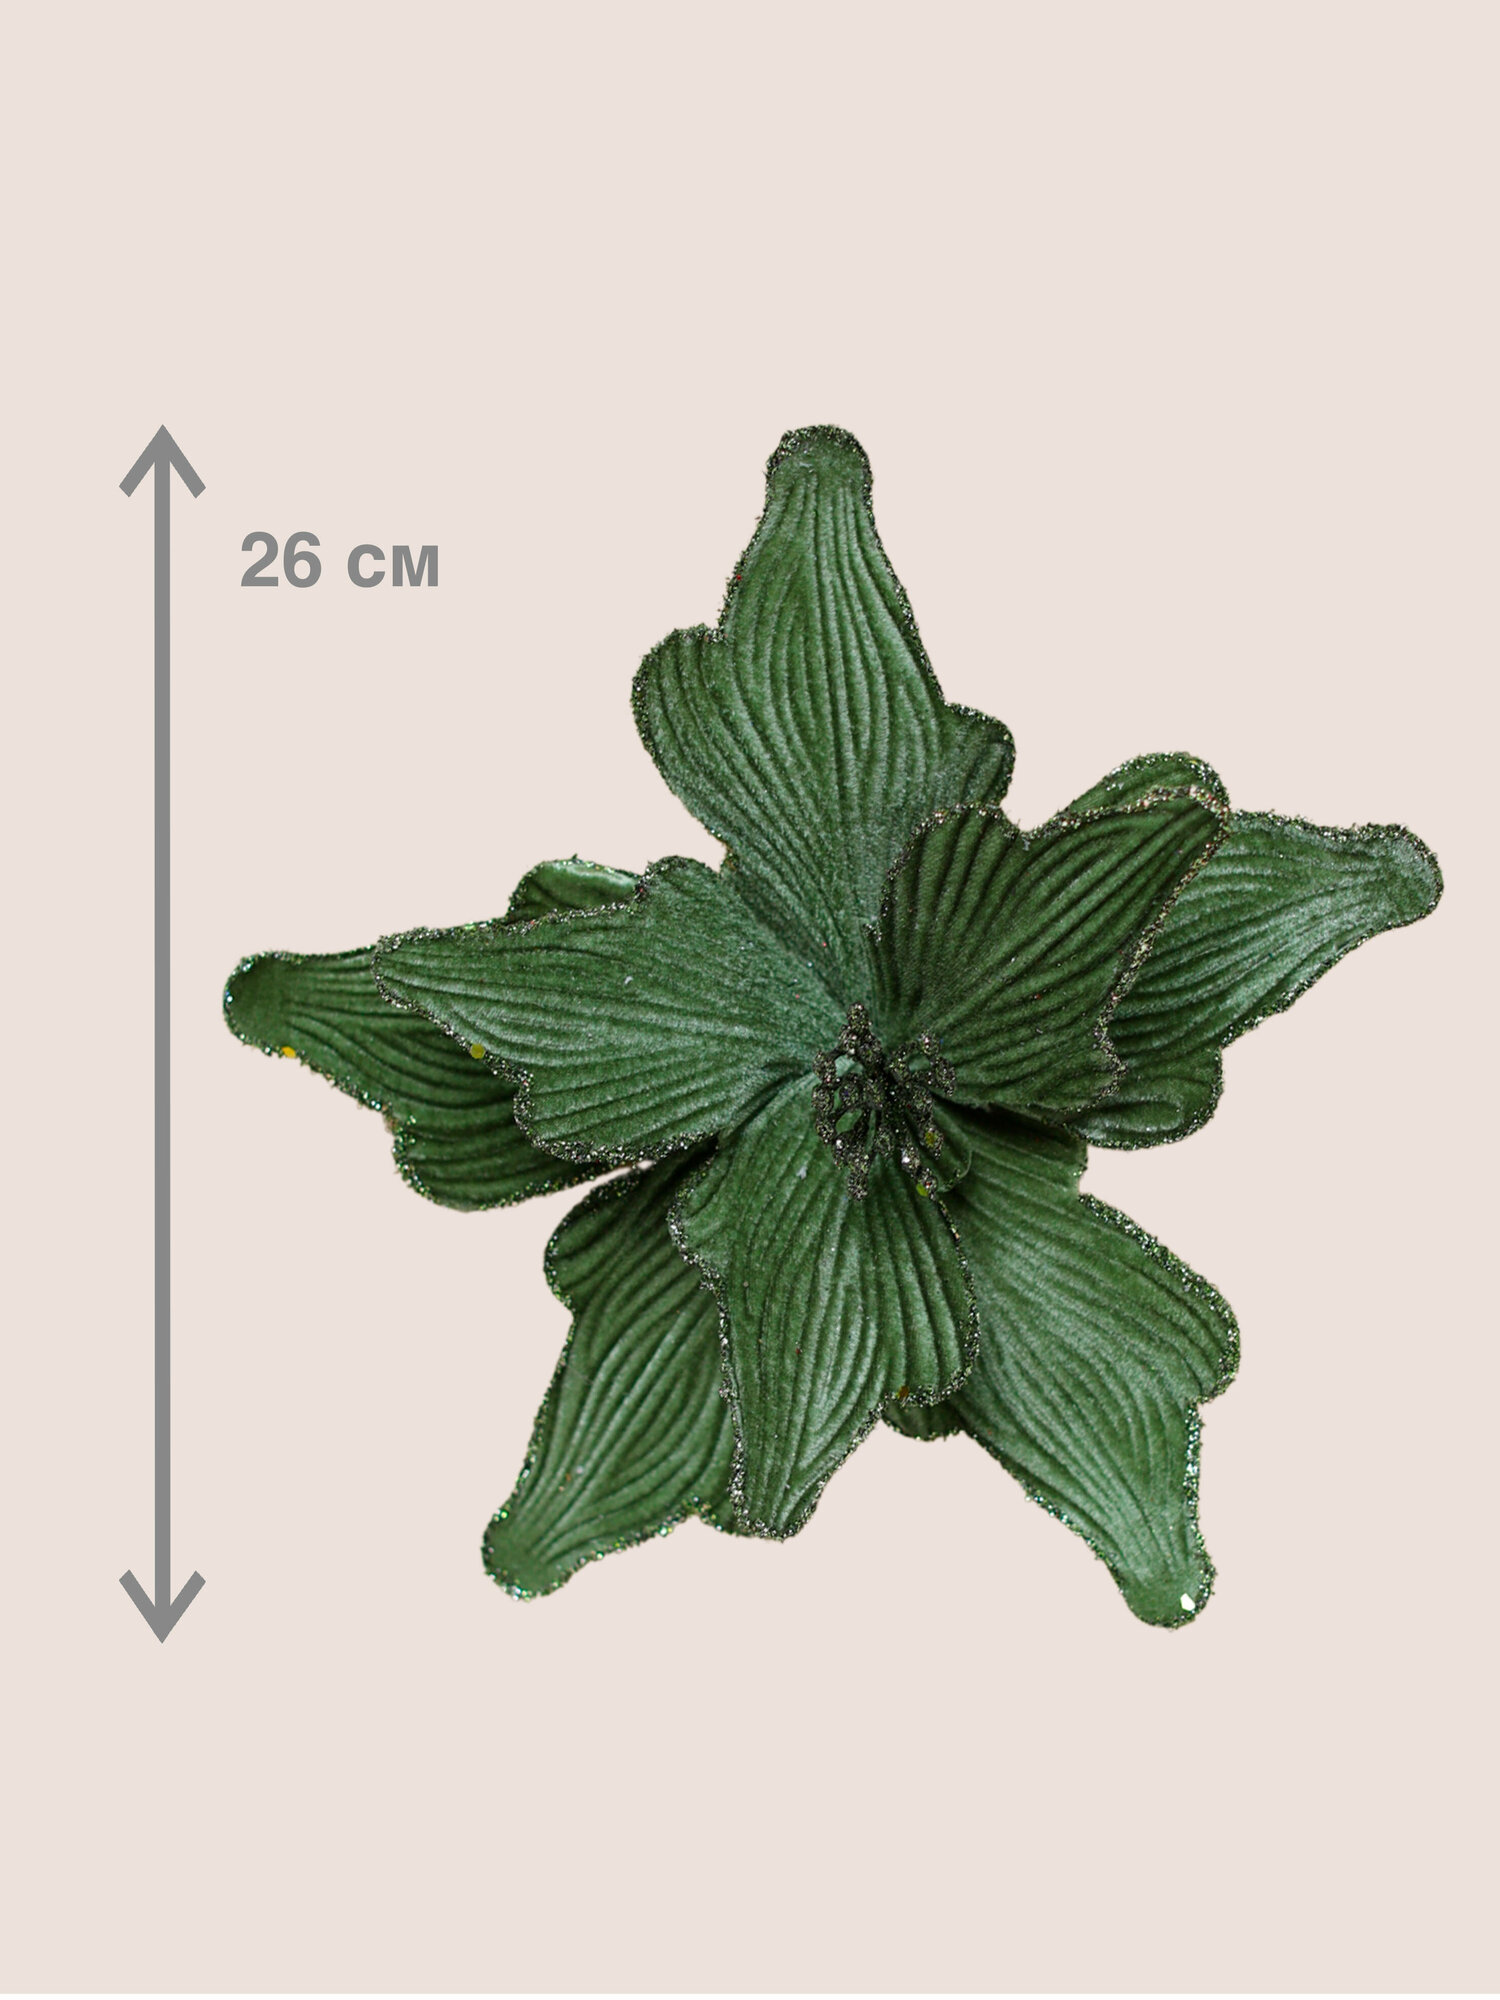 Цветок искусственный декоративный новогодний диаметр 26 см цвет темно-зеленый